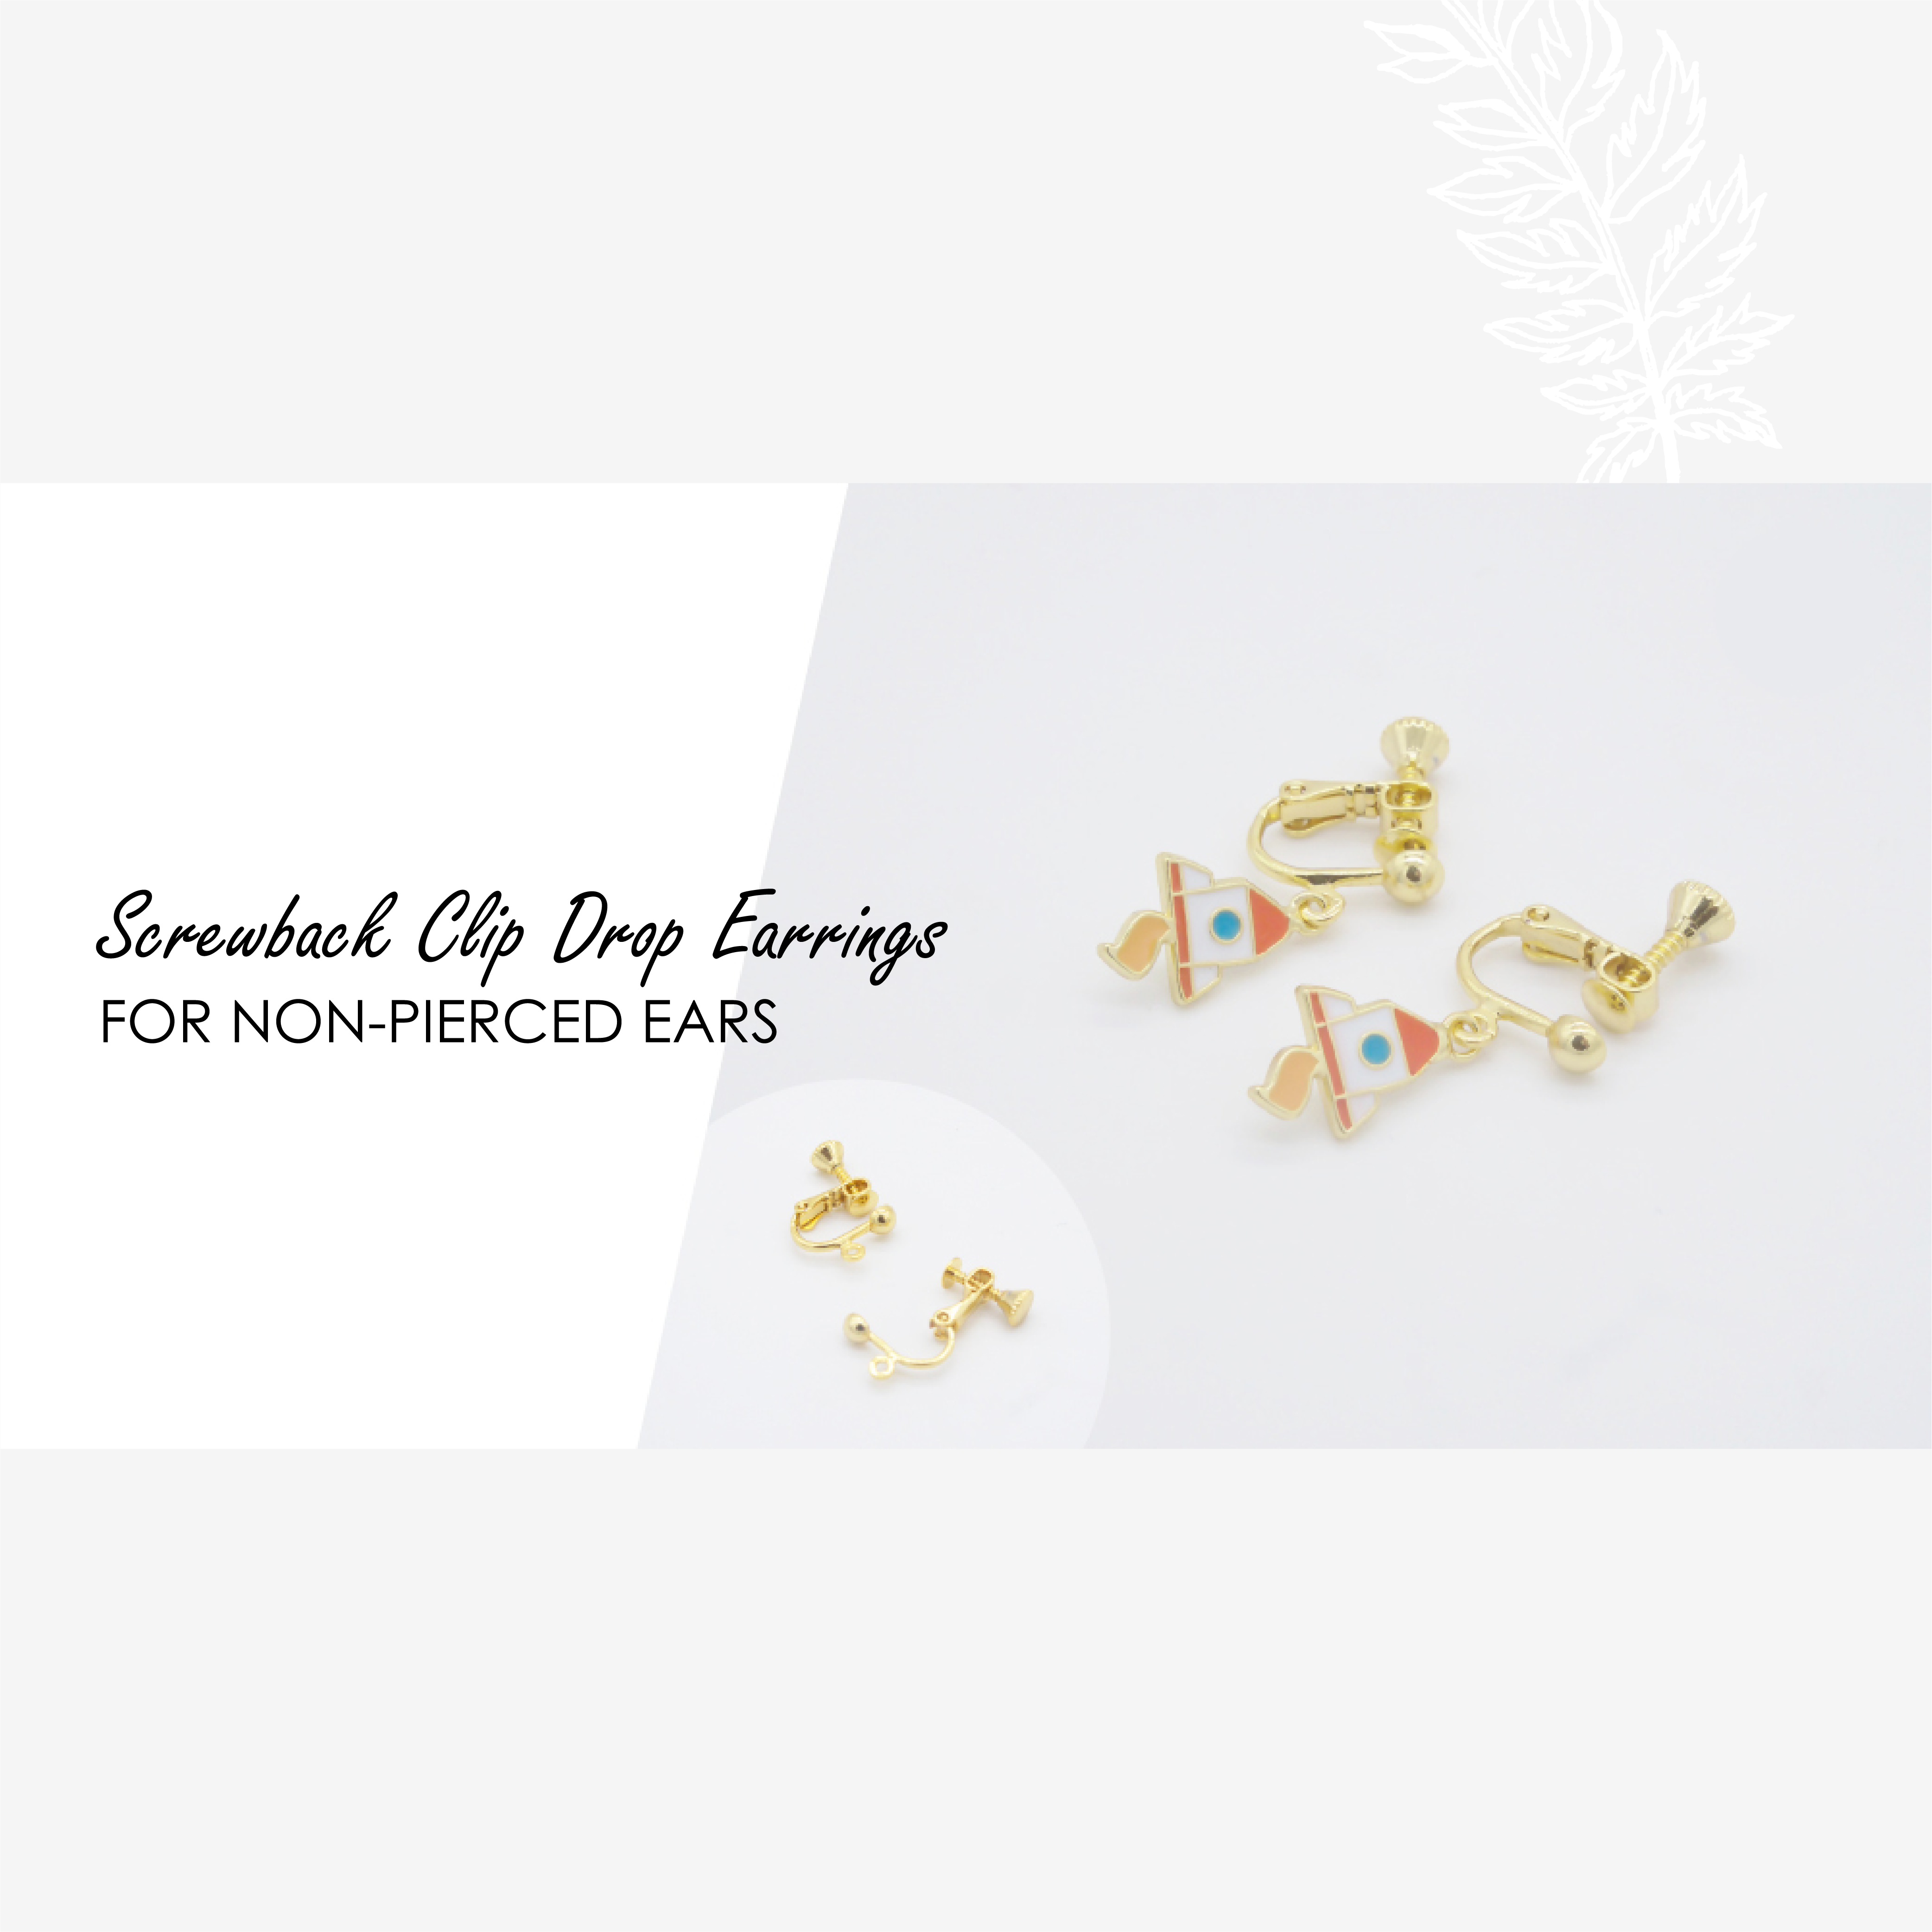 Li'l Green Leaves Enamel Earrings/ Bracelet/ Necklace